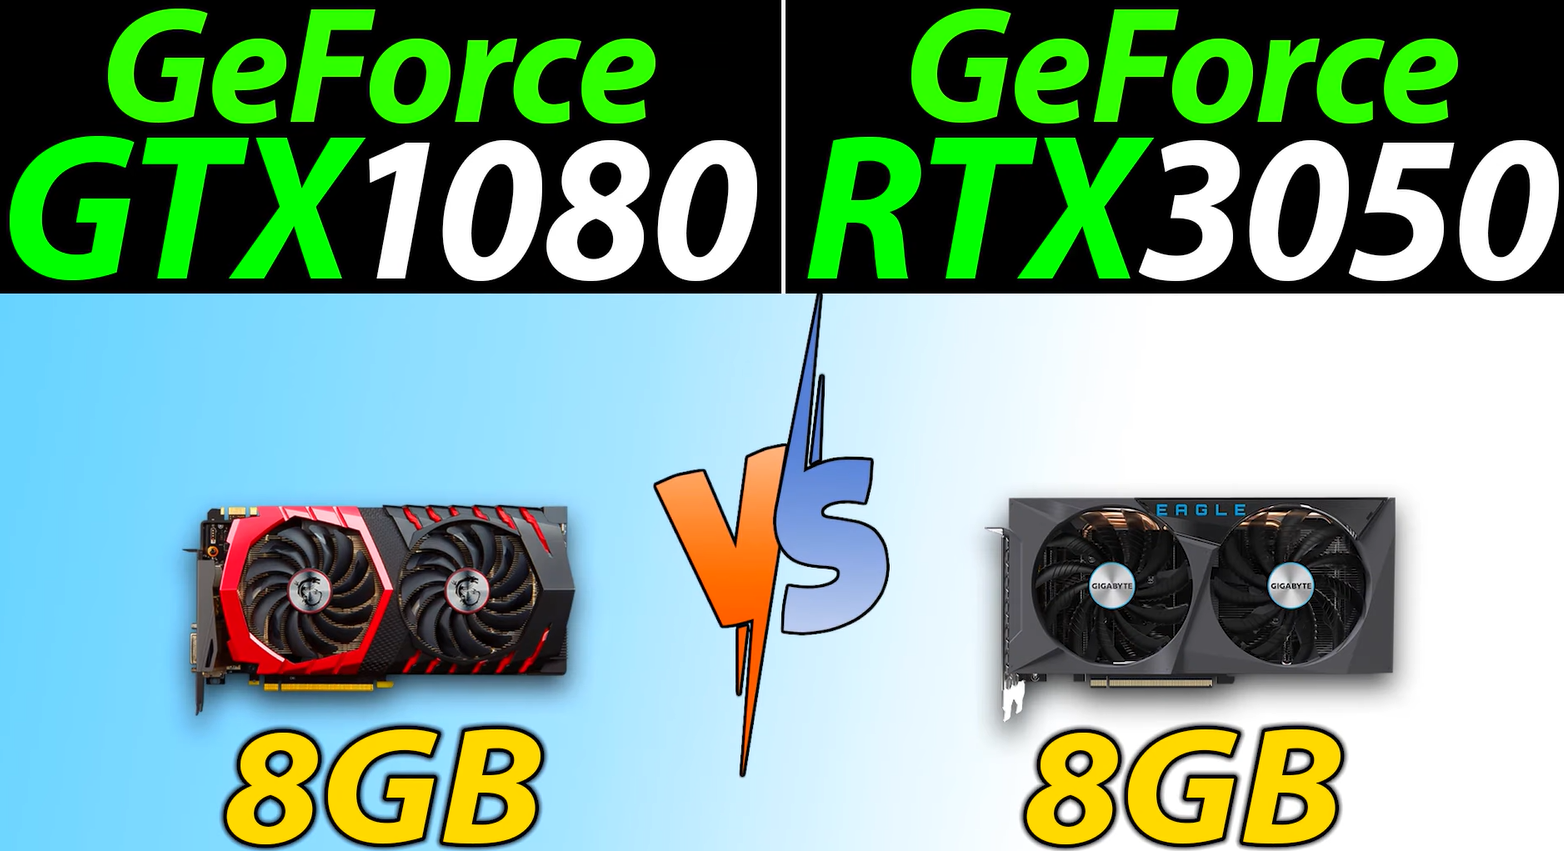 У каждой по 8 ГБ памяти, но какие разные: RTX 3050 и GTX 1080 сравнили в играх